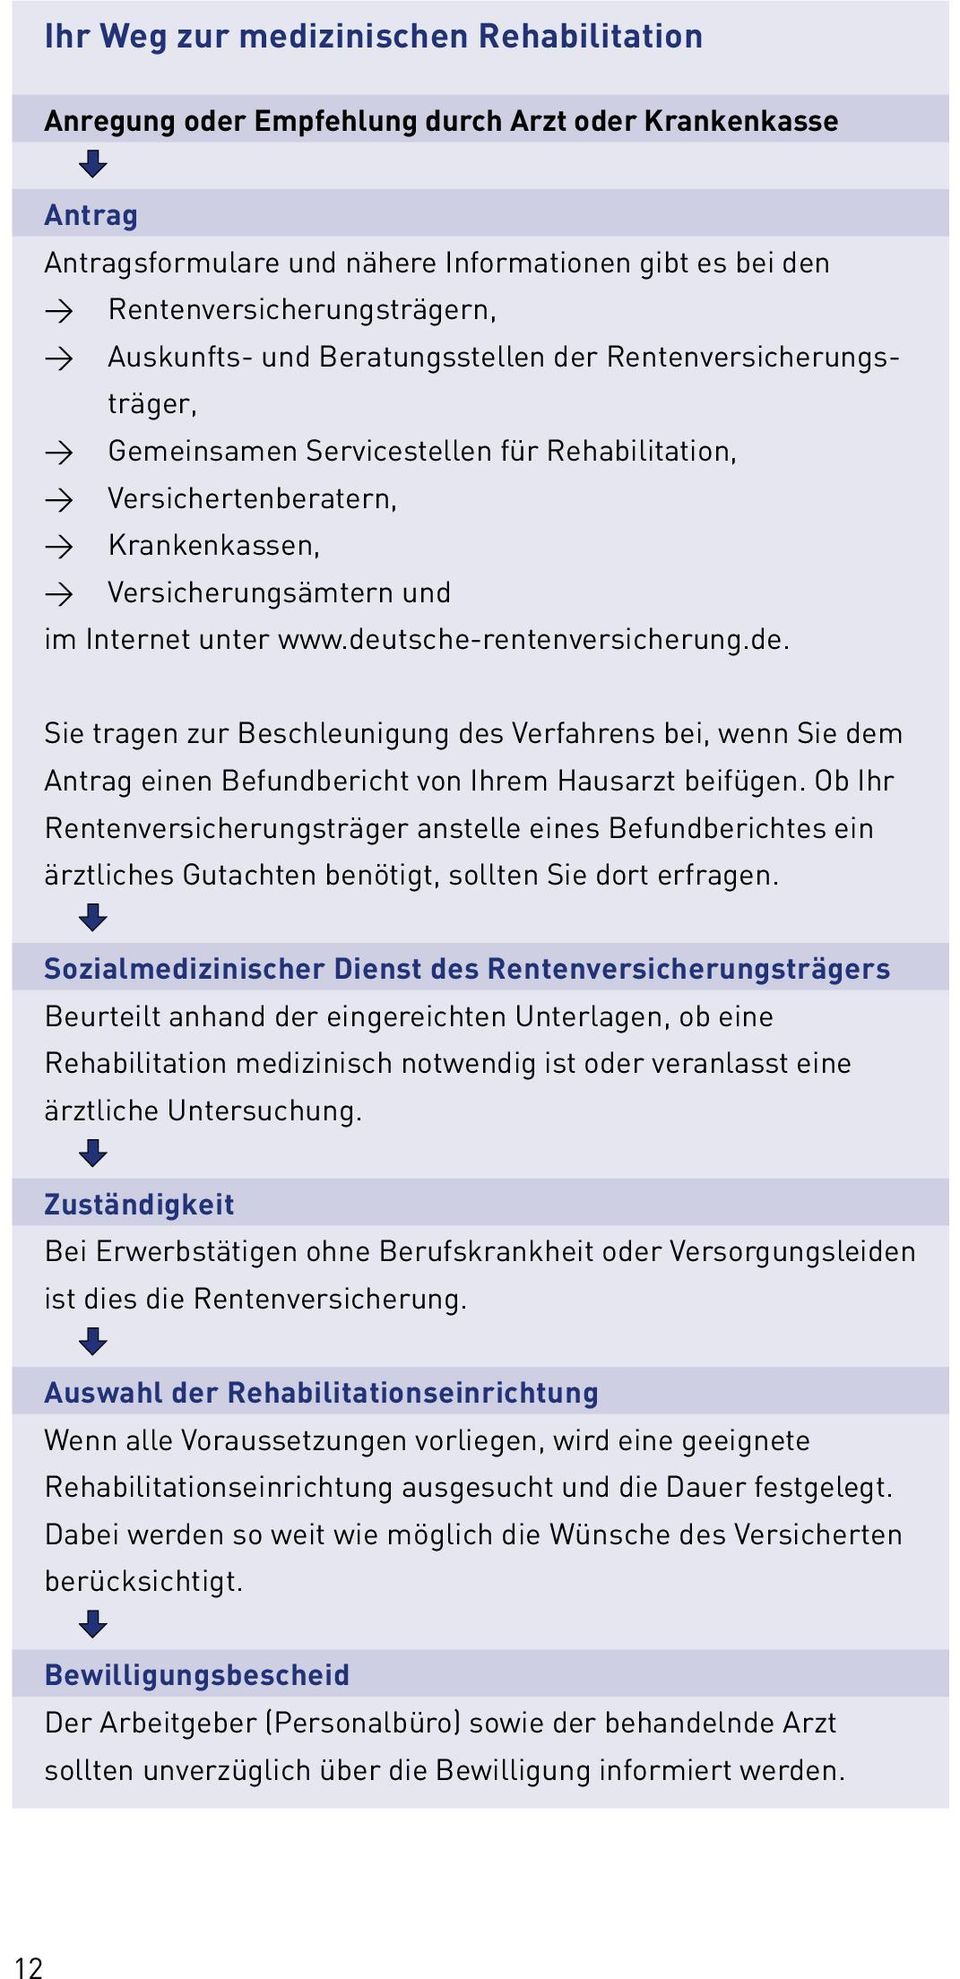 www.deutsche-rentenversicherung.de. Sie tragen zur Beschleunigung des Verfahrens bei, wenn Sie dem Antrag einen Befundbericht von Ihrem Hausarzt beifügen.